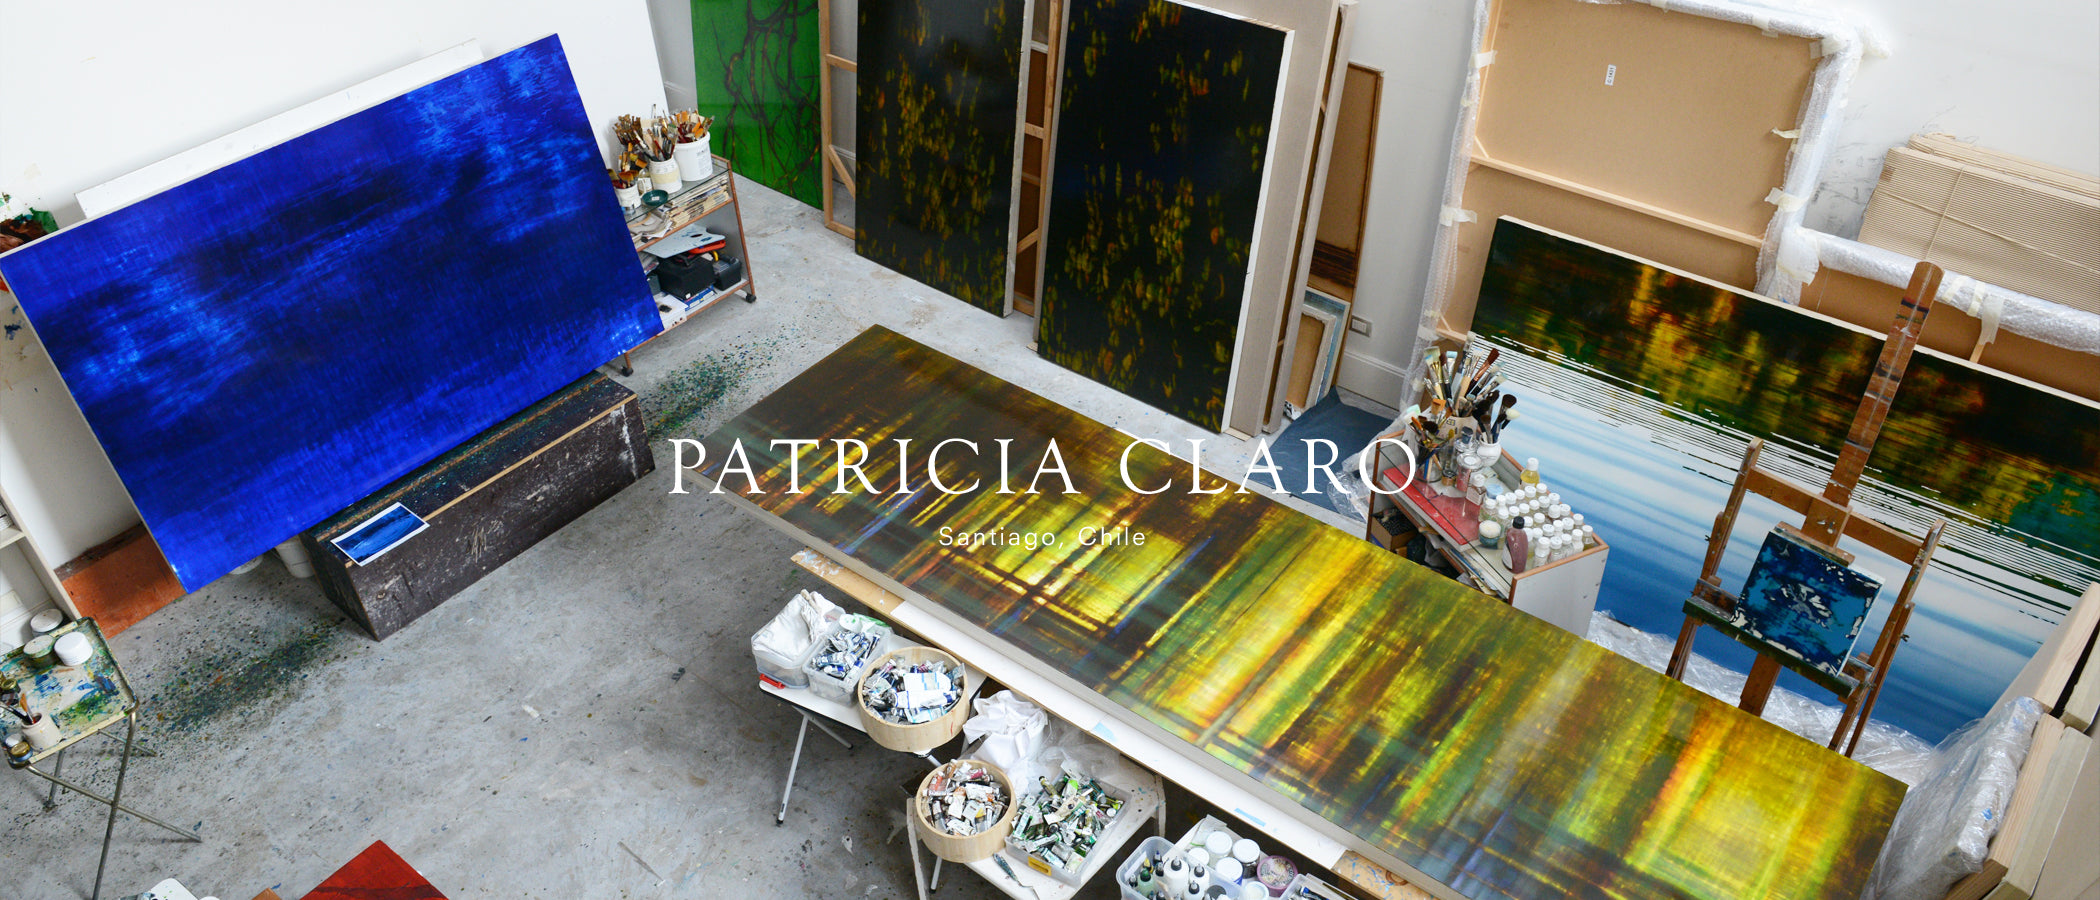 Patricia Claro